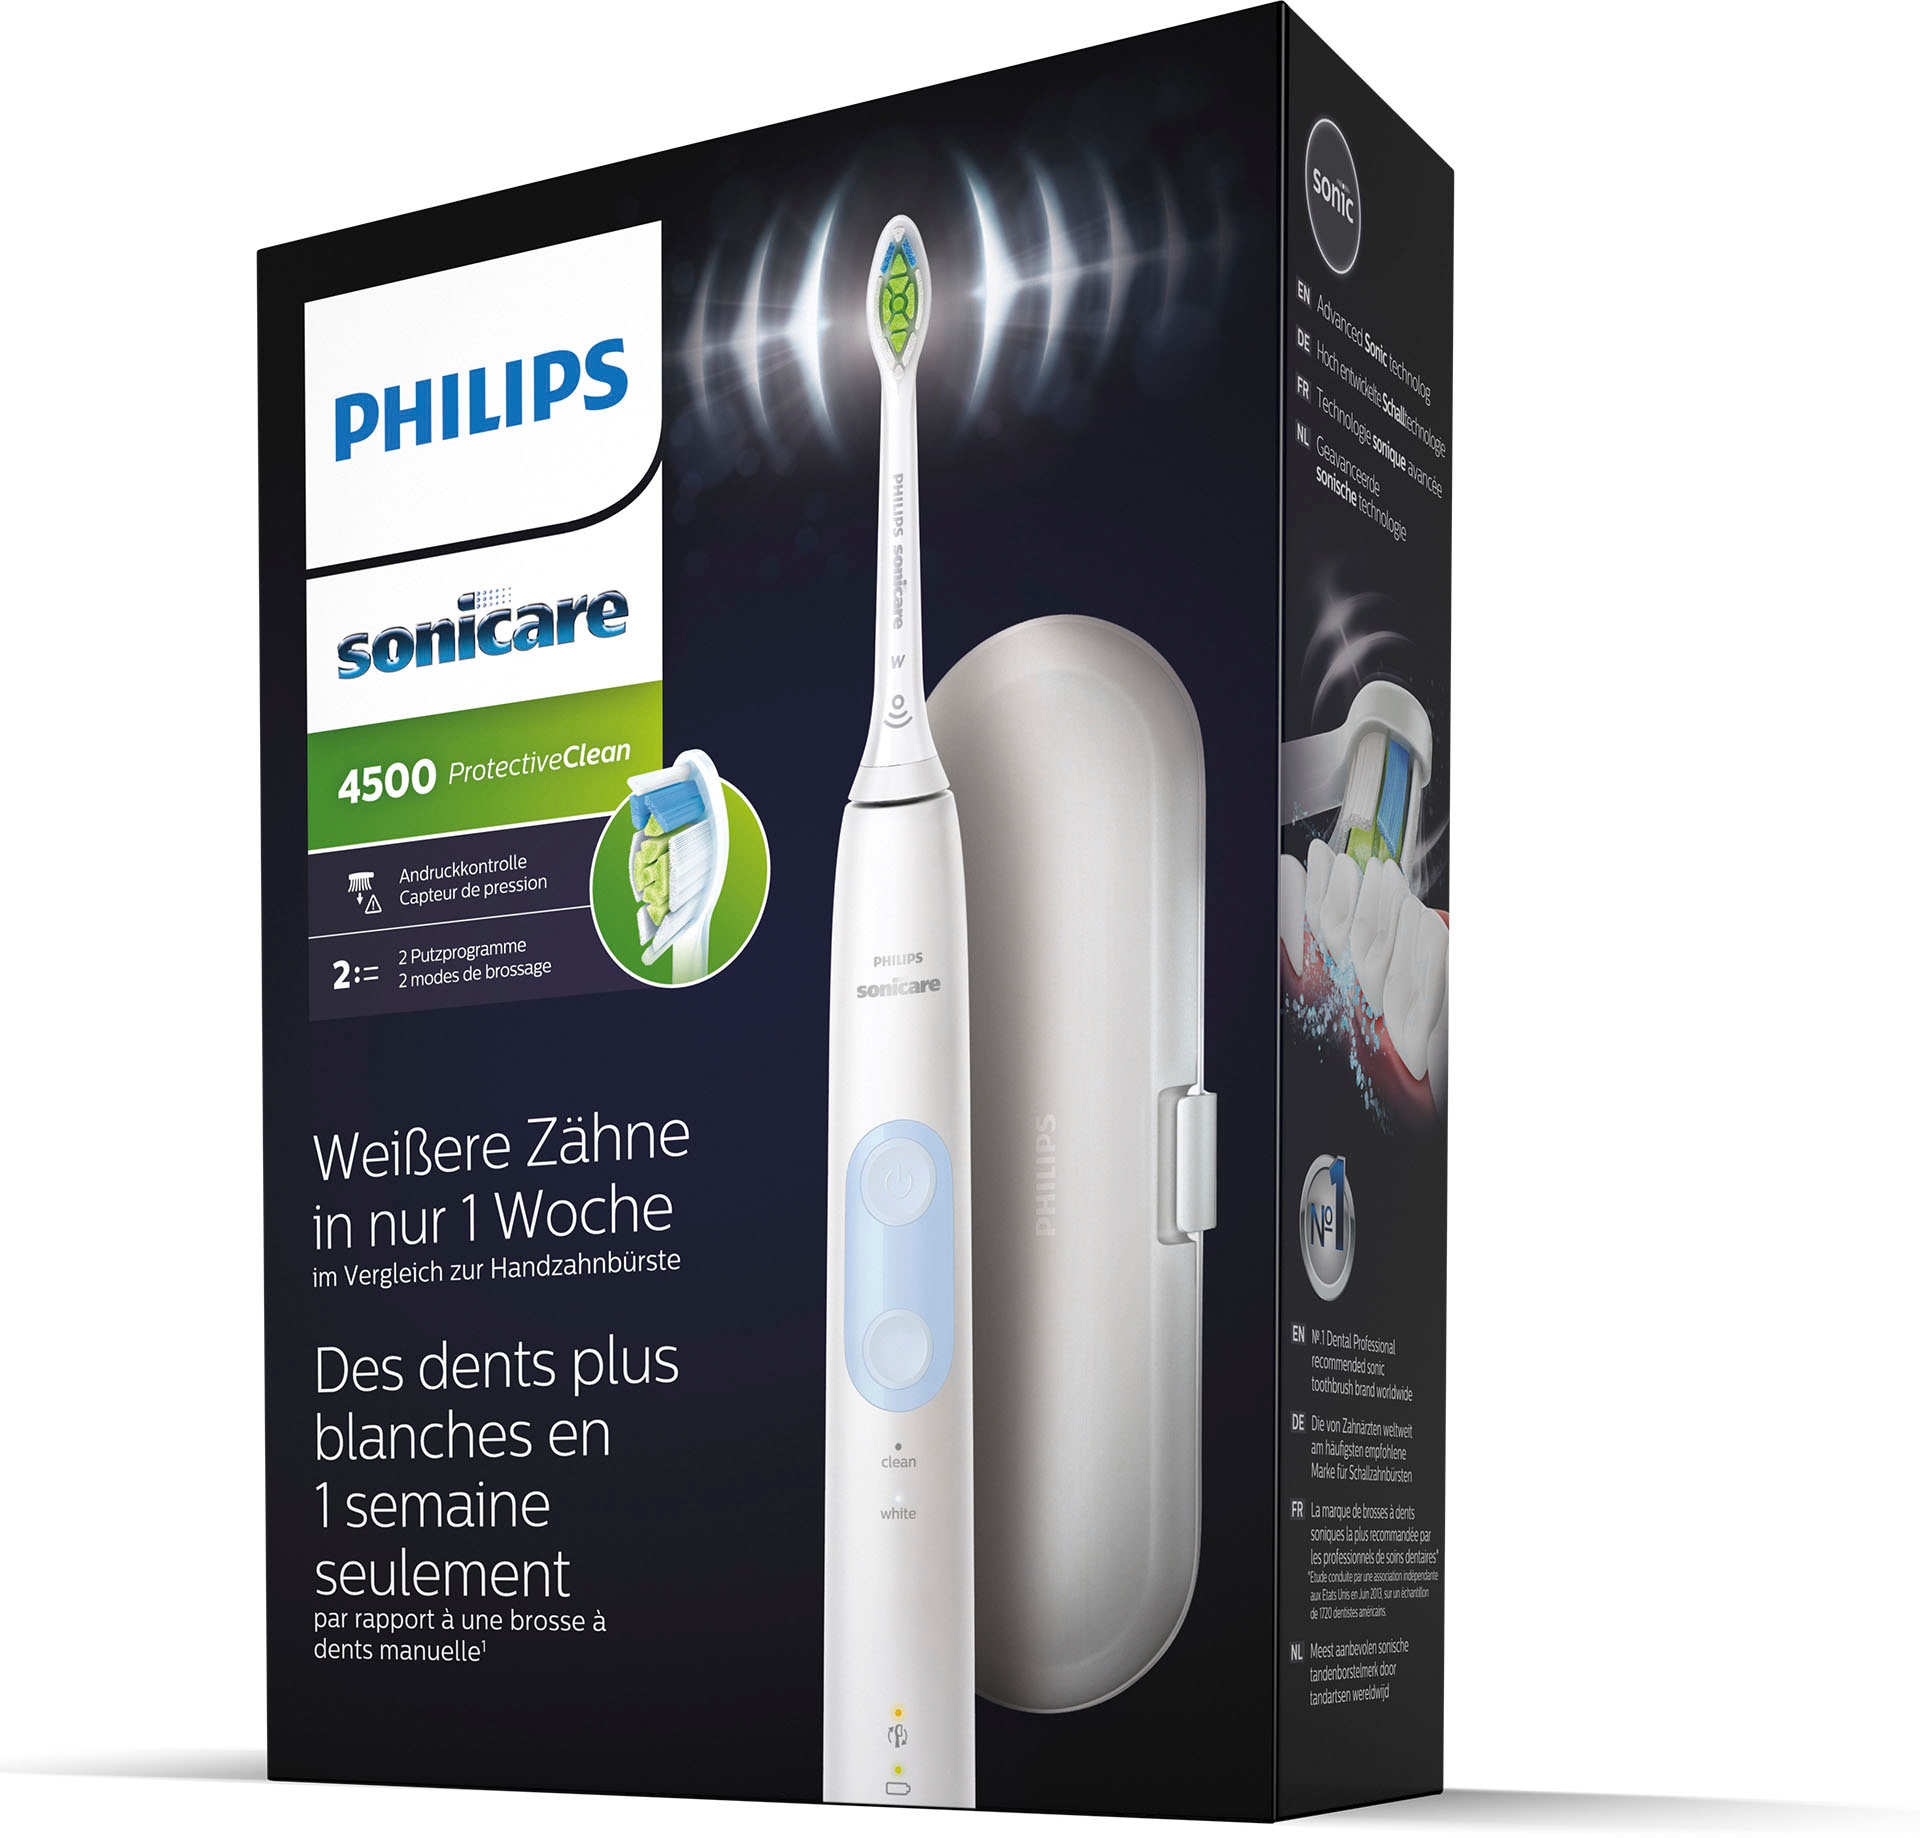 Philips Sonicare Elektrische Zahnbürste 1 XXL St. mit 4500, 3 Protective »HX6839/28«, Garantie 2 Putzprogrammen Aufsteckbürsten, Jahren mit Clean